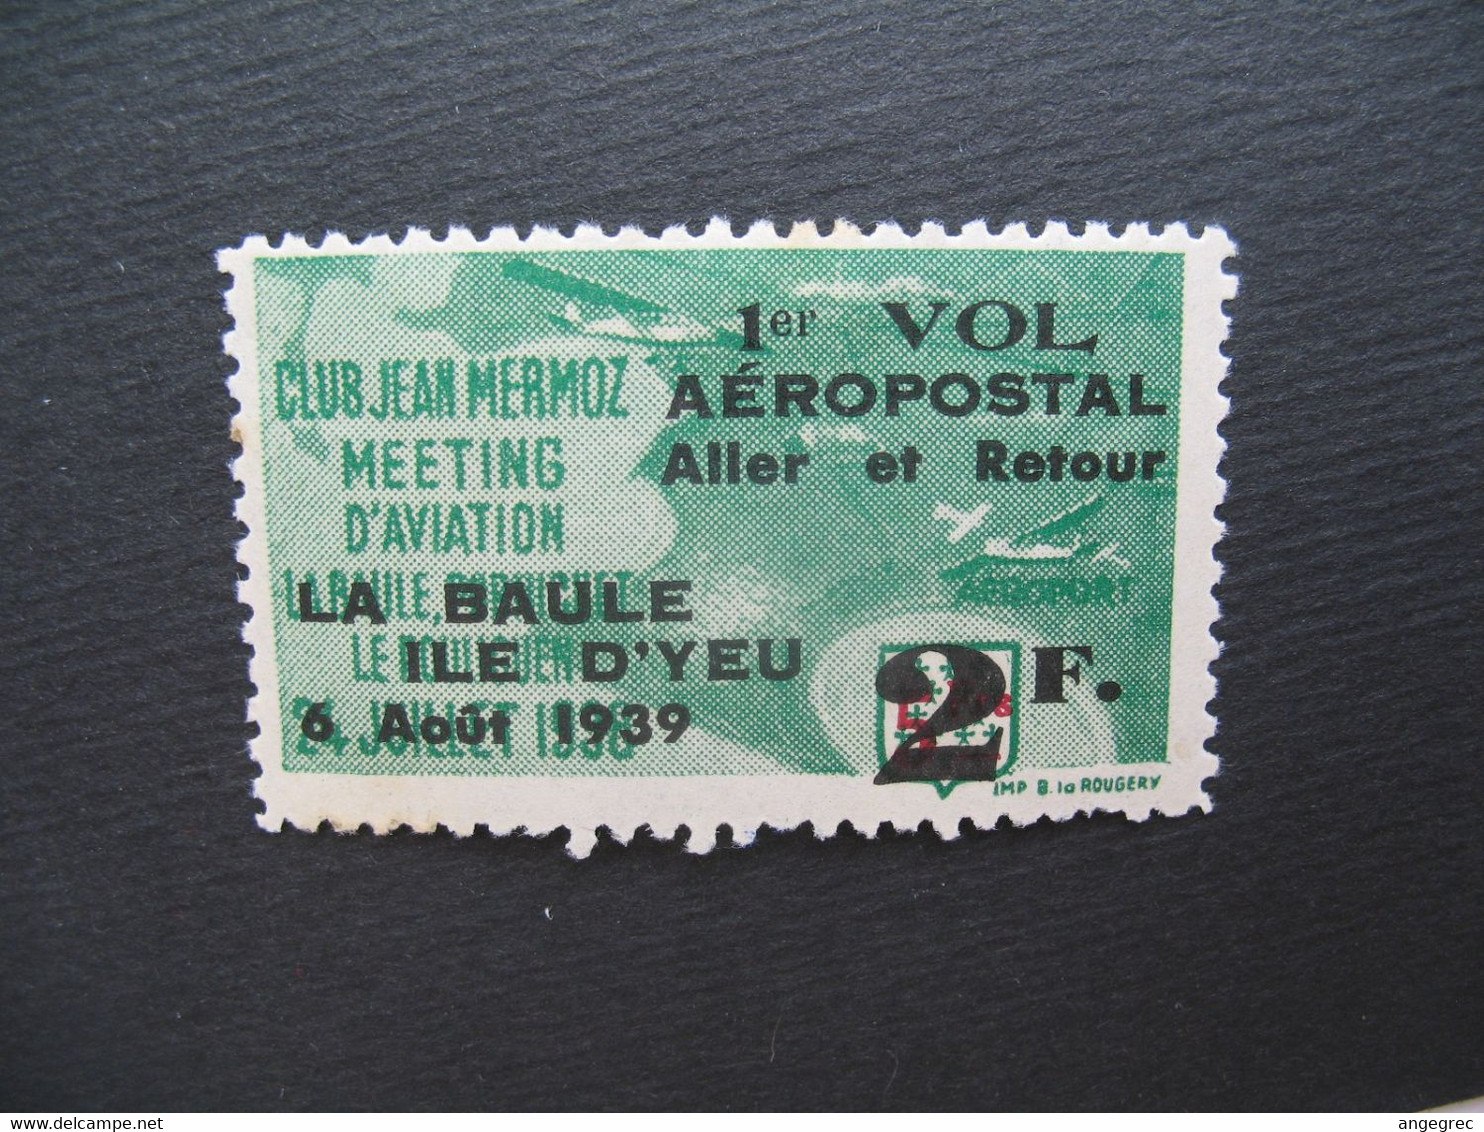 Vignette Label Stamp Vignetta  Aufkleber France Club Jean Mermoz Meeting Aviation La Baule Ile D'Yeu 1939 Vol Aéropostal - Aviation